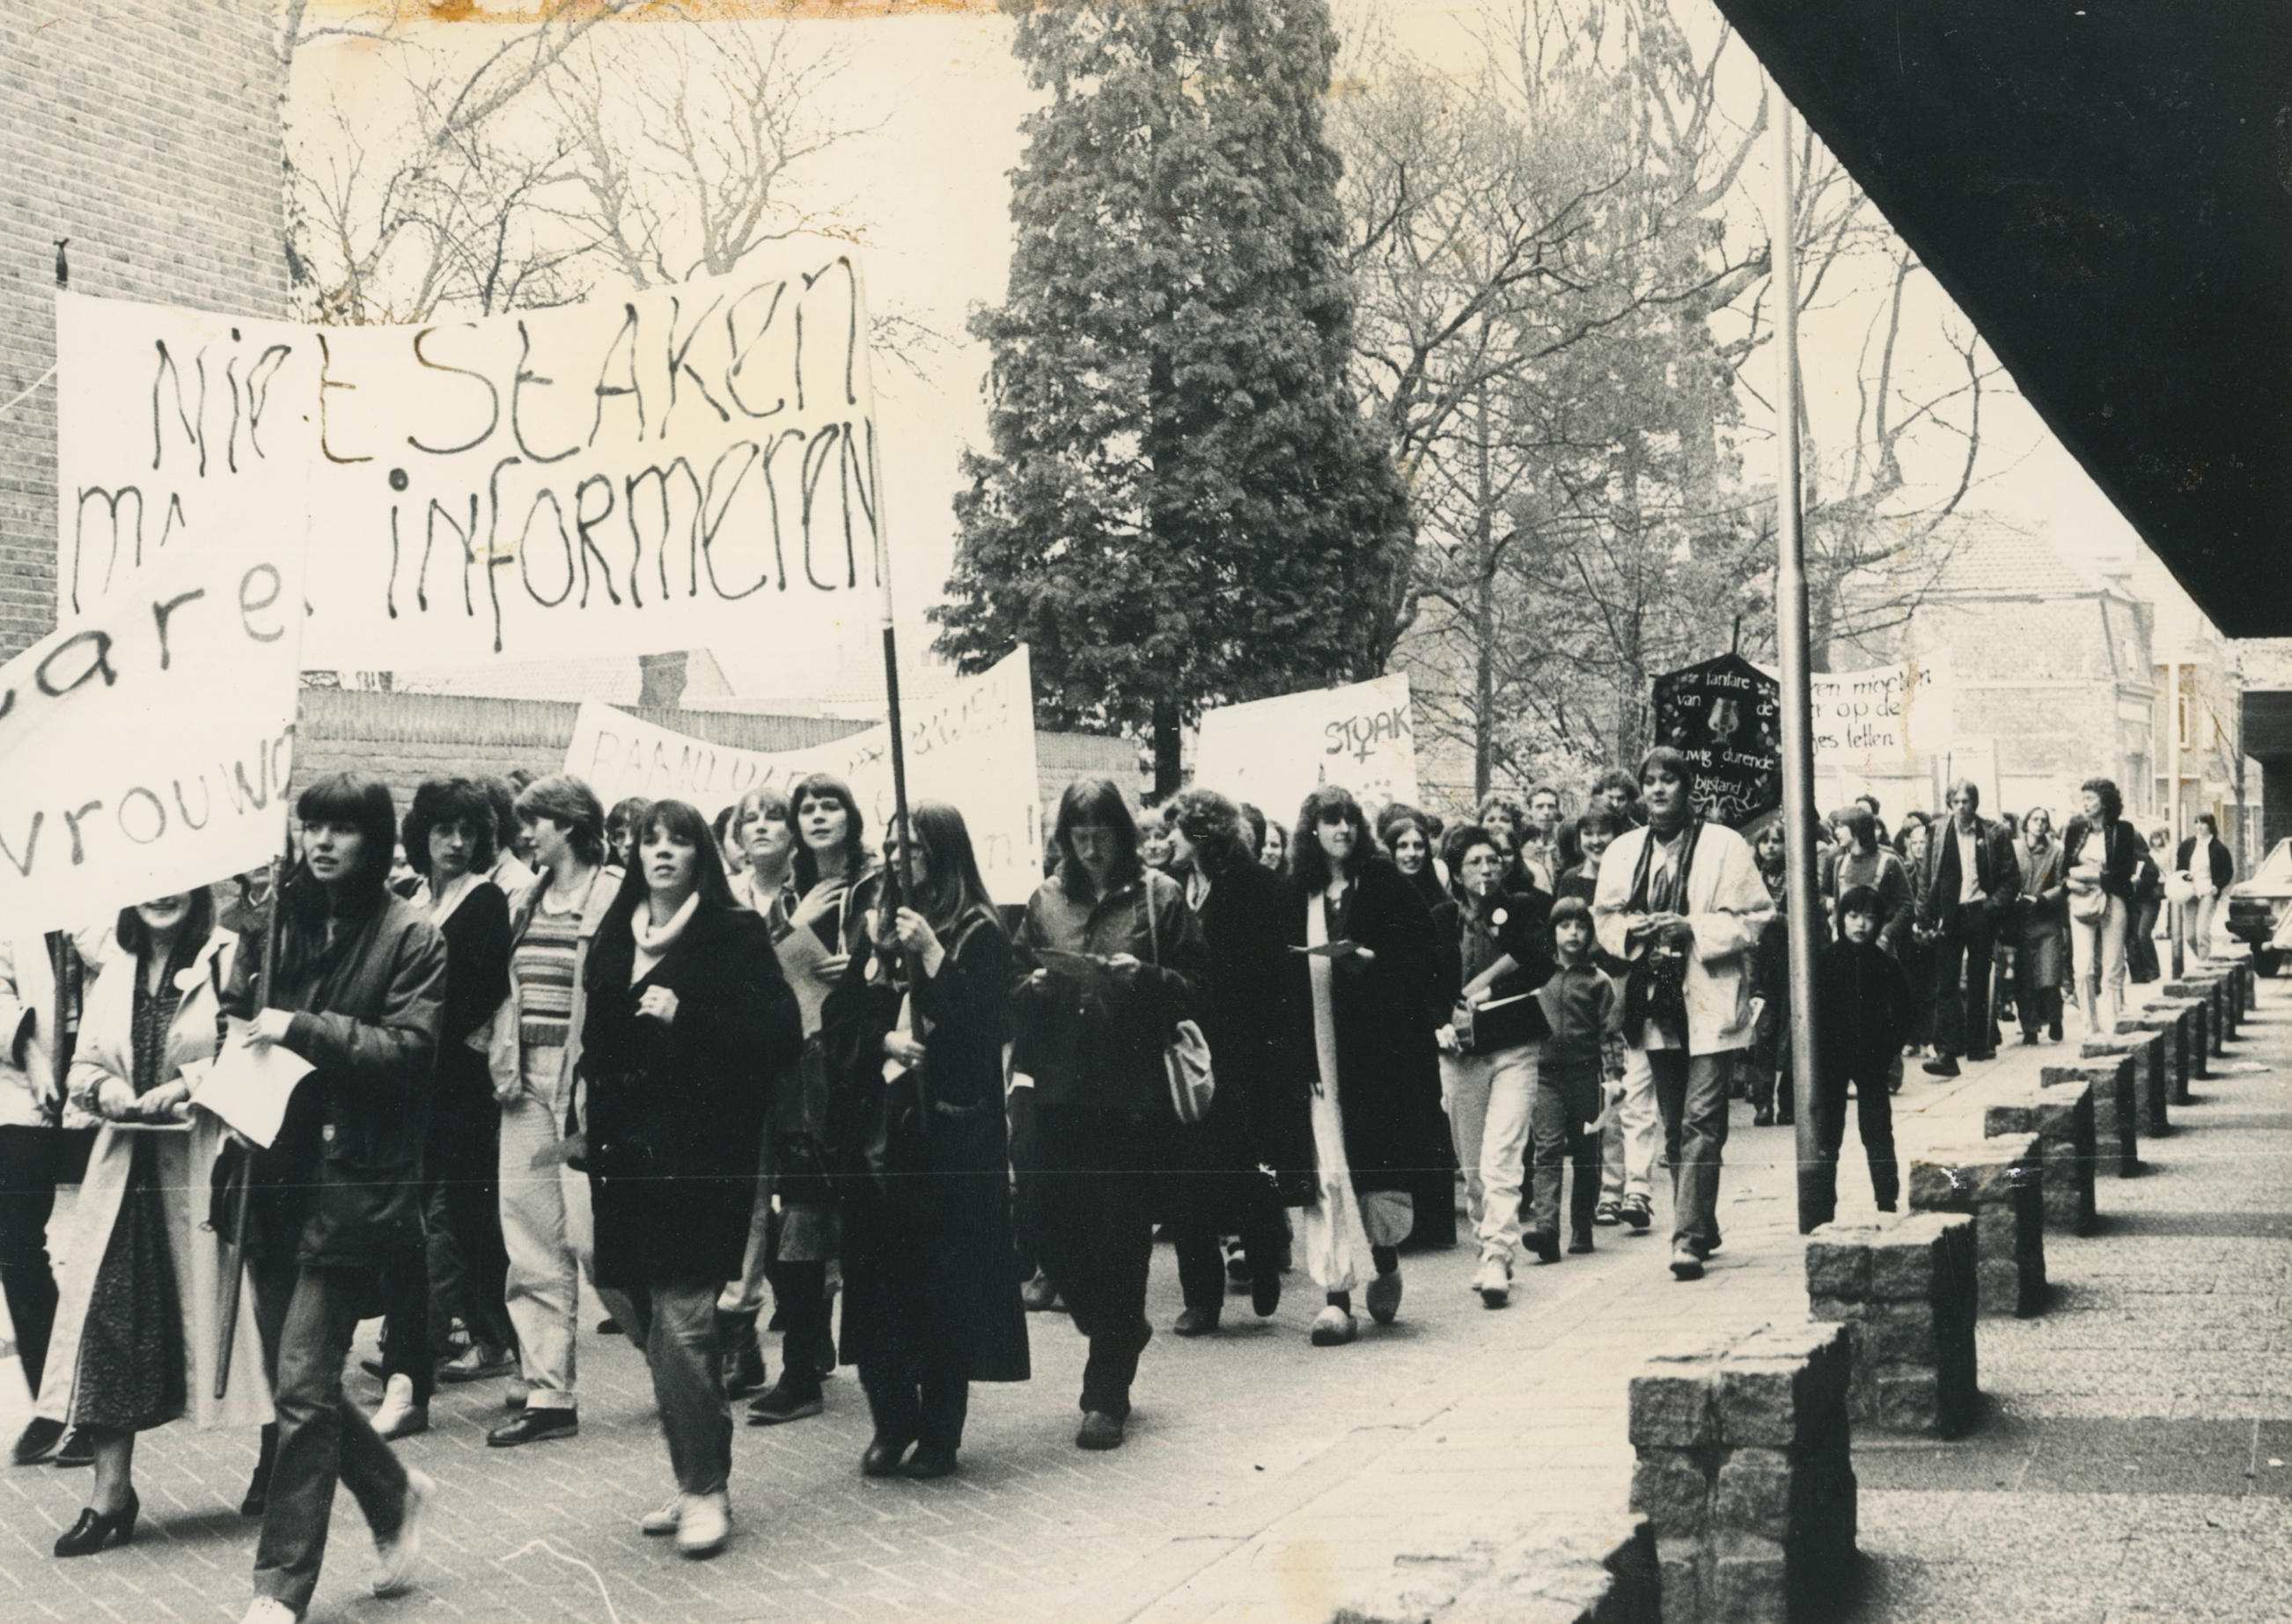 De vrouwenstaking in Tilburg op 30 maart 1981. Fotograaf: Feniks / Vrouwencentrum, collectie Regionaal Archief Tilburg.